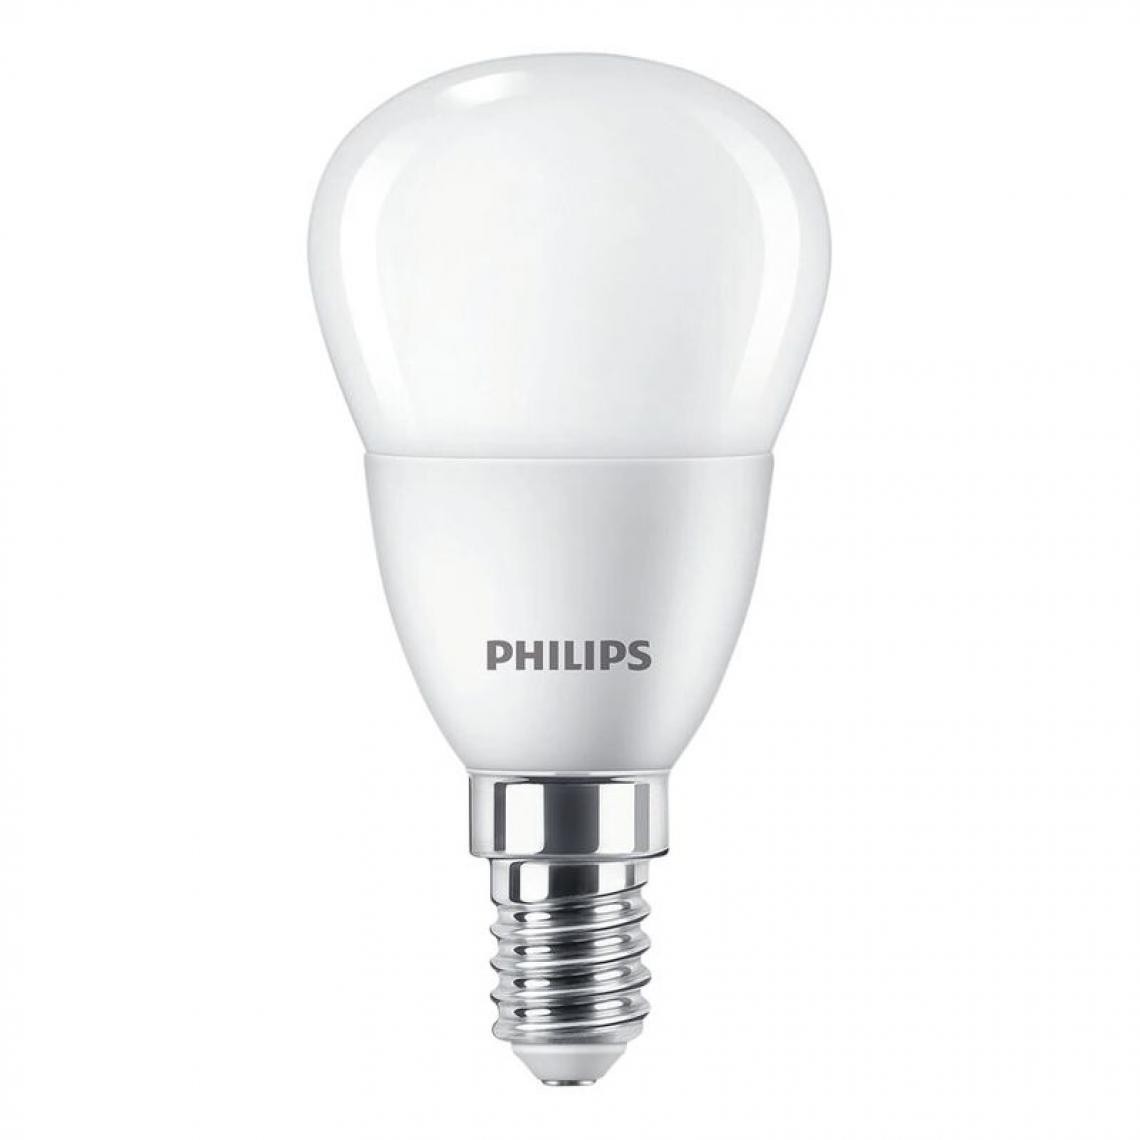 Philips - Lot 2 ampoules LED sphériques PHILIPS E14 40w - Ampoules LED